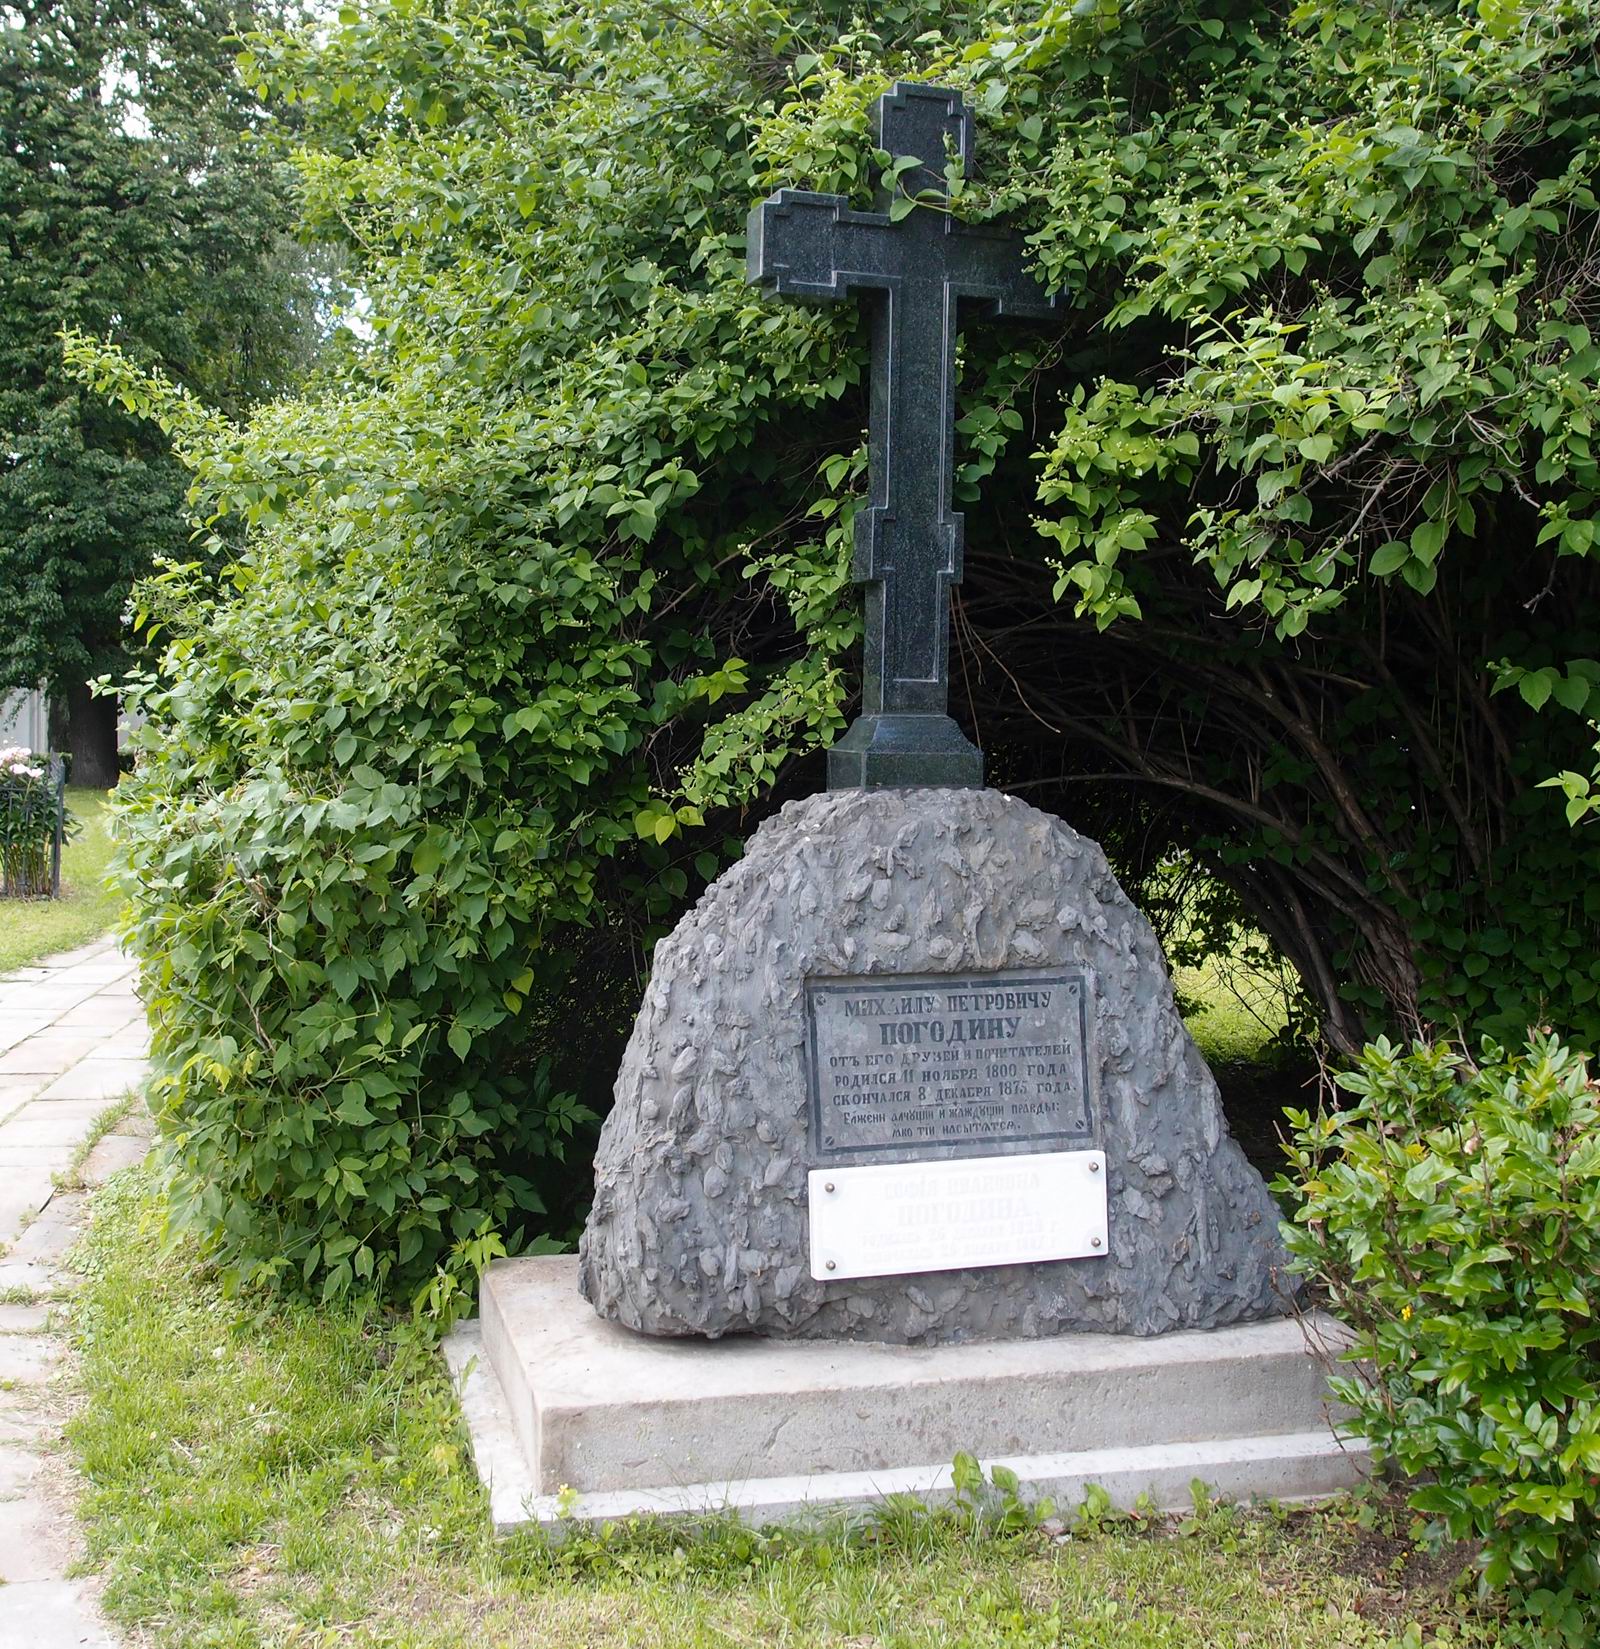 Памятник на могиле Погодина М.П. (1800–1875), в Новодевичьем монастыре. Нажмите левую кнопку мыши чтобы увидеть памятник до реставрации.